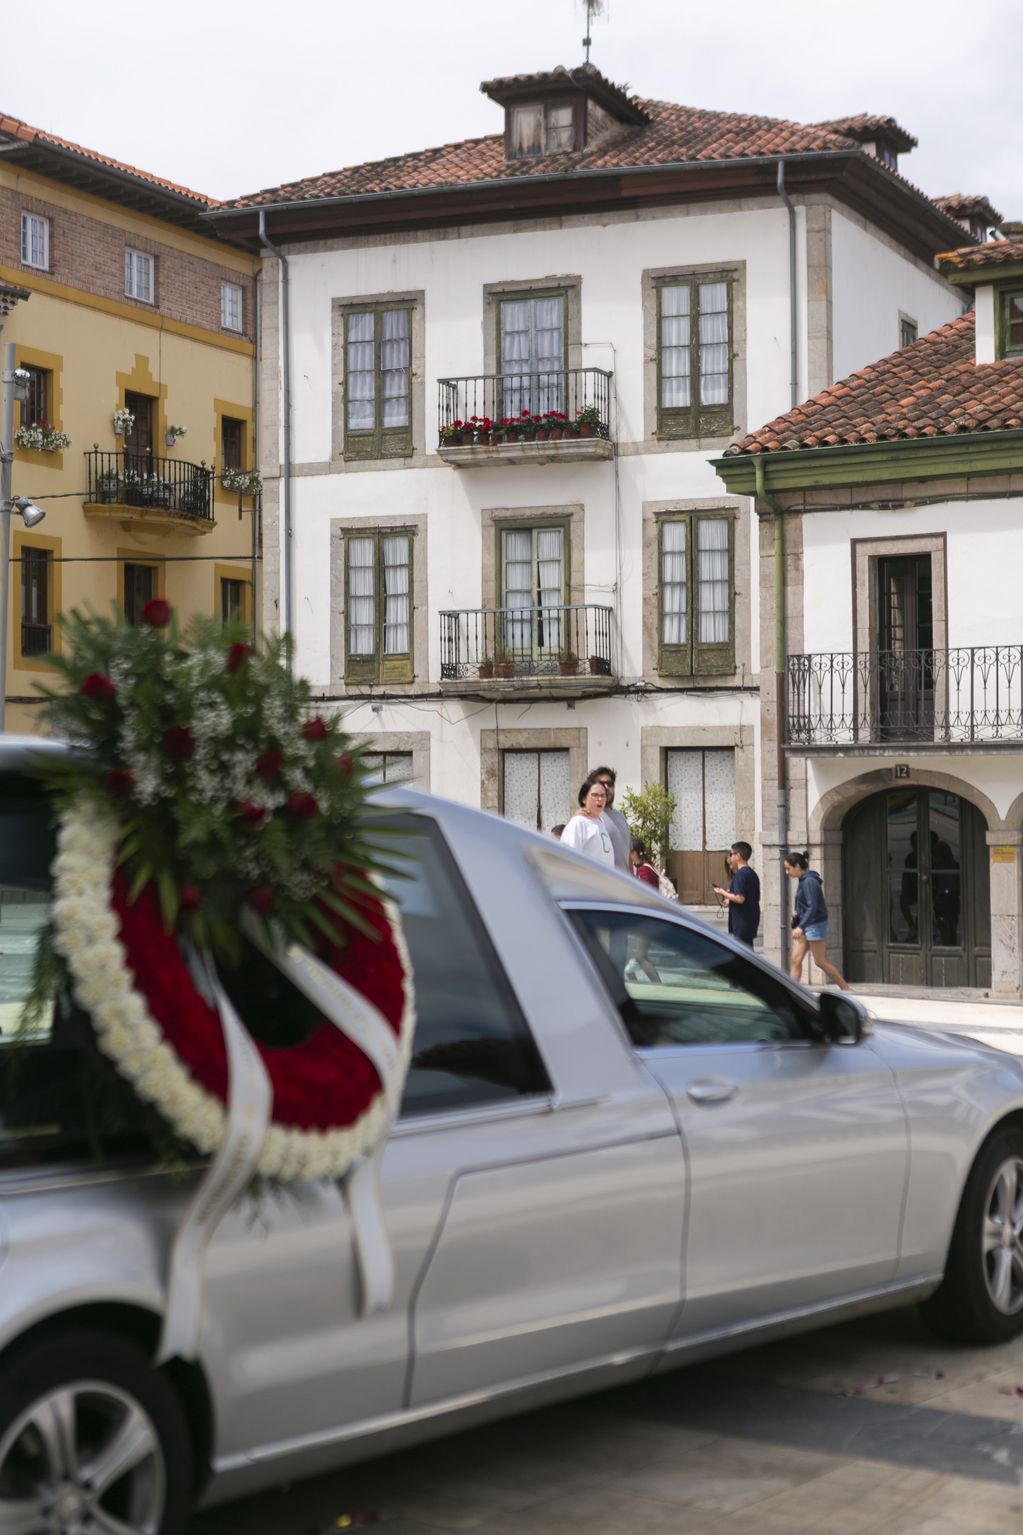 En imágenes: funeral por José Luis Balbín